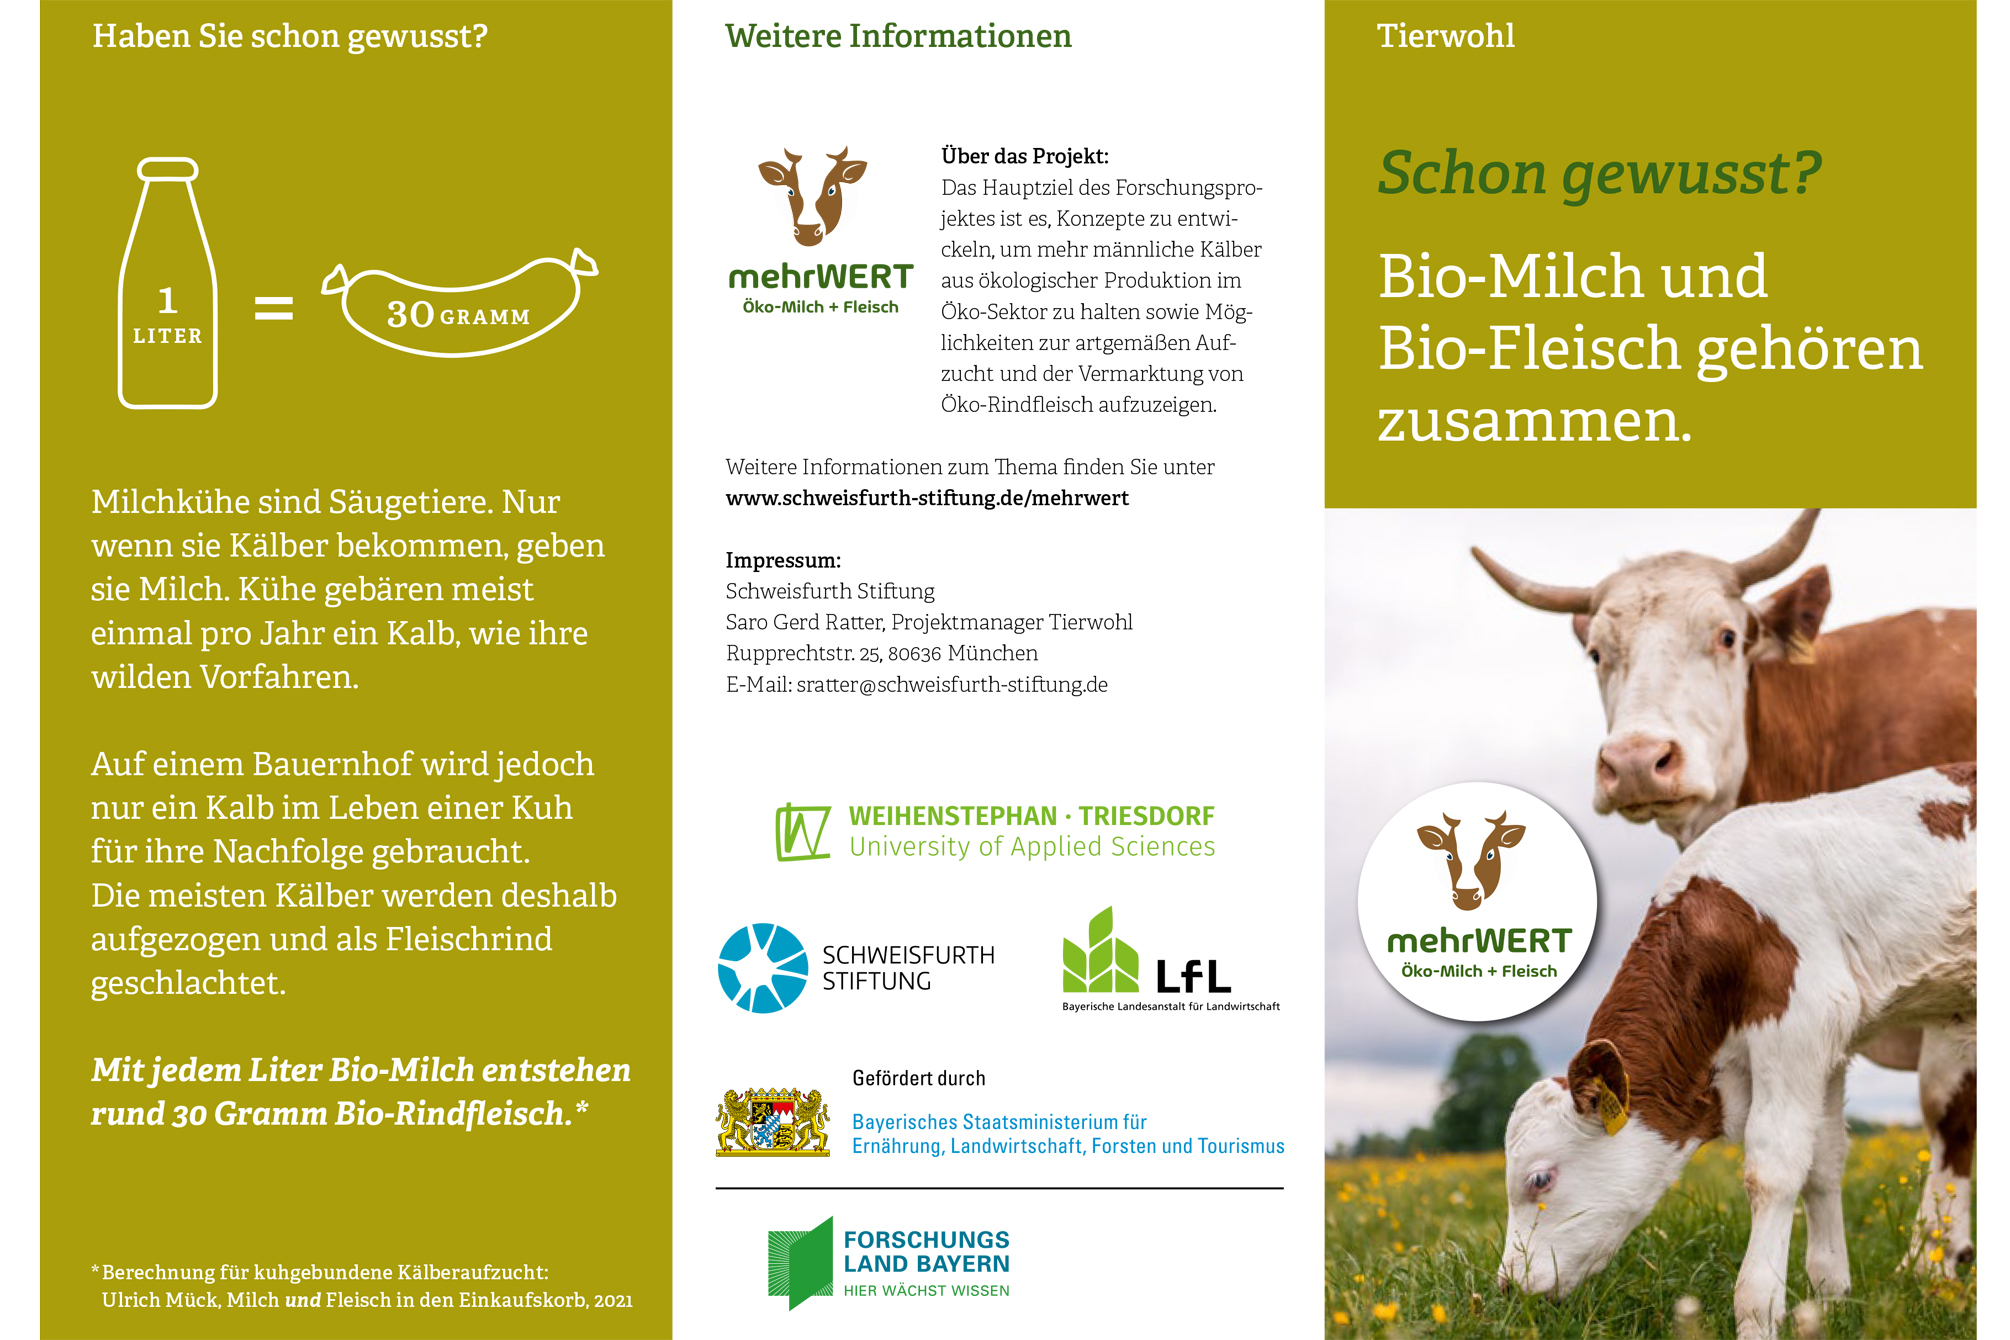 Schweisfurth Stiftung: Projekt mehrWERT Öko-Milch und -Fleisch gehören zusammen